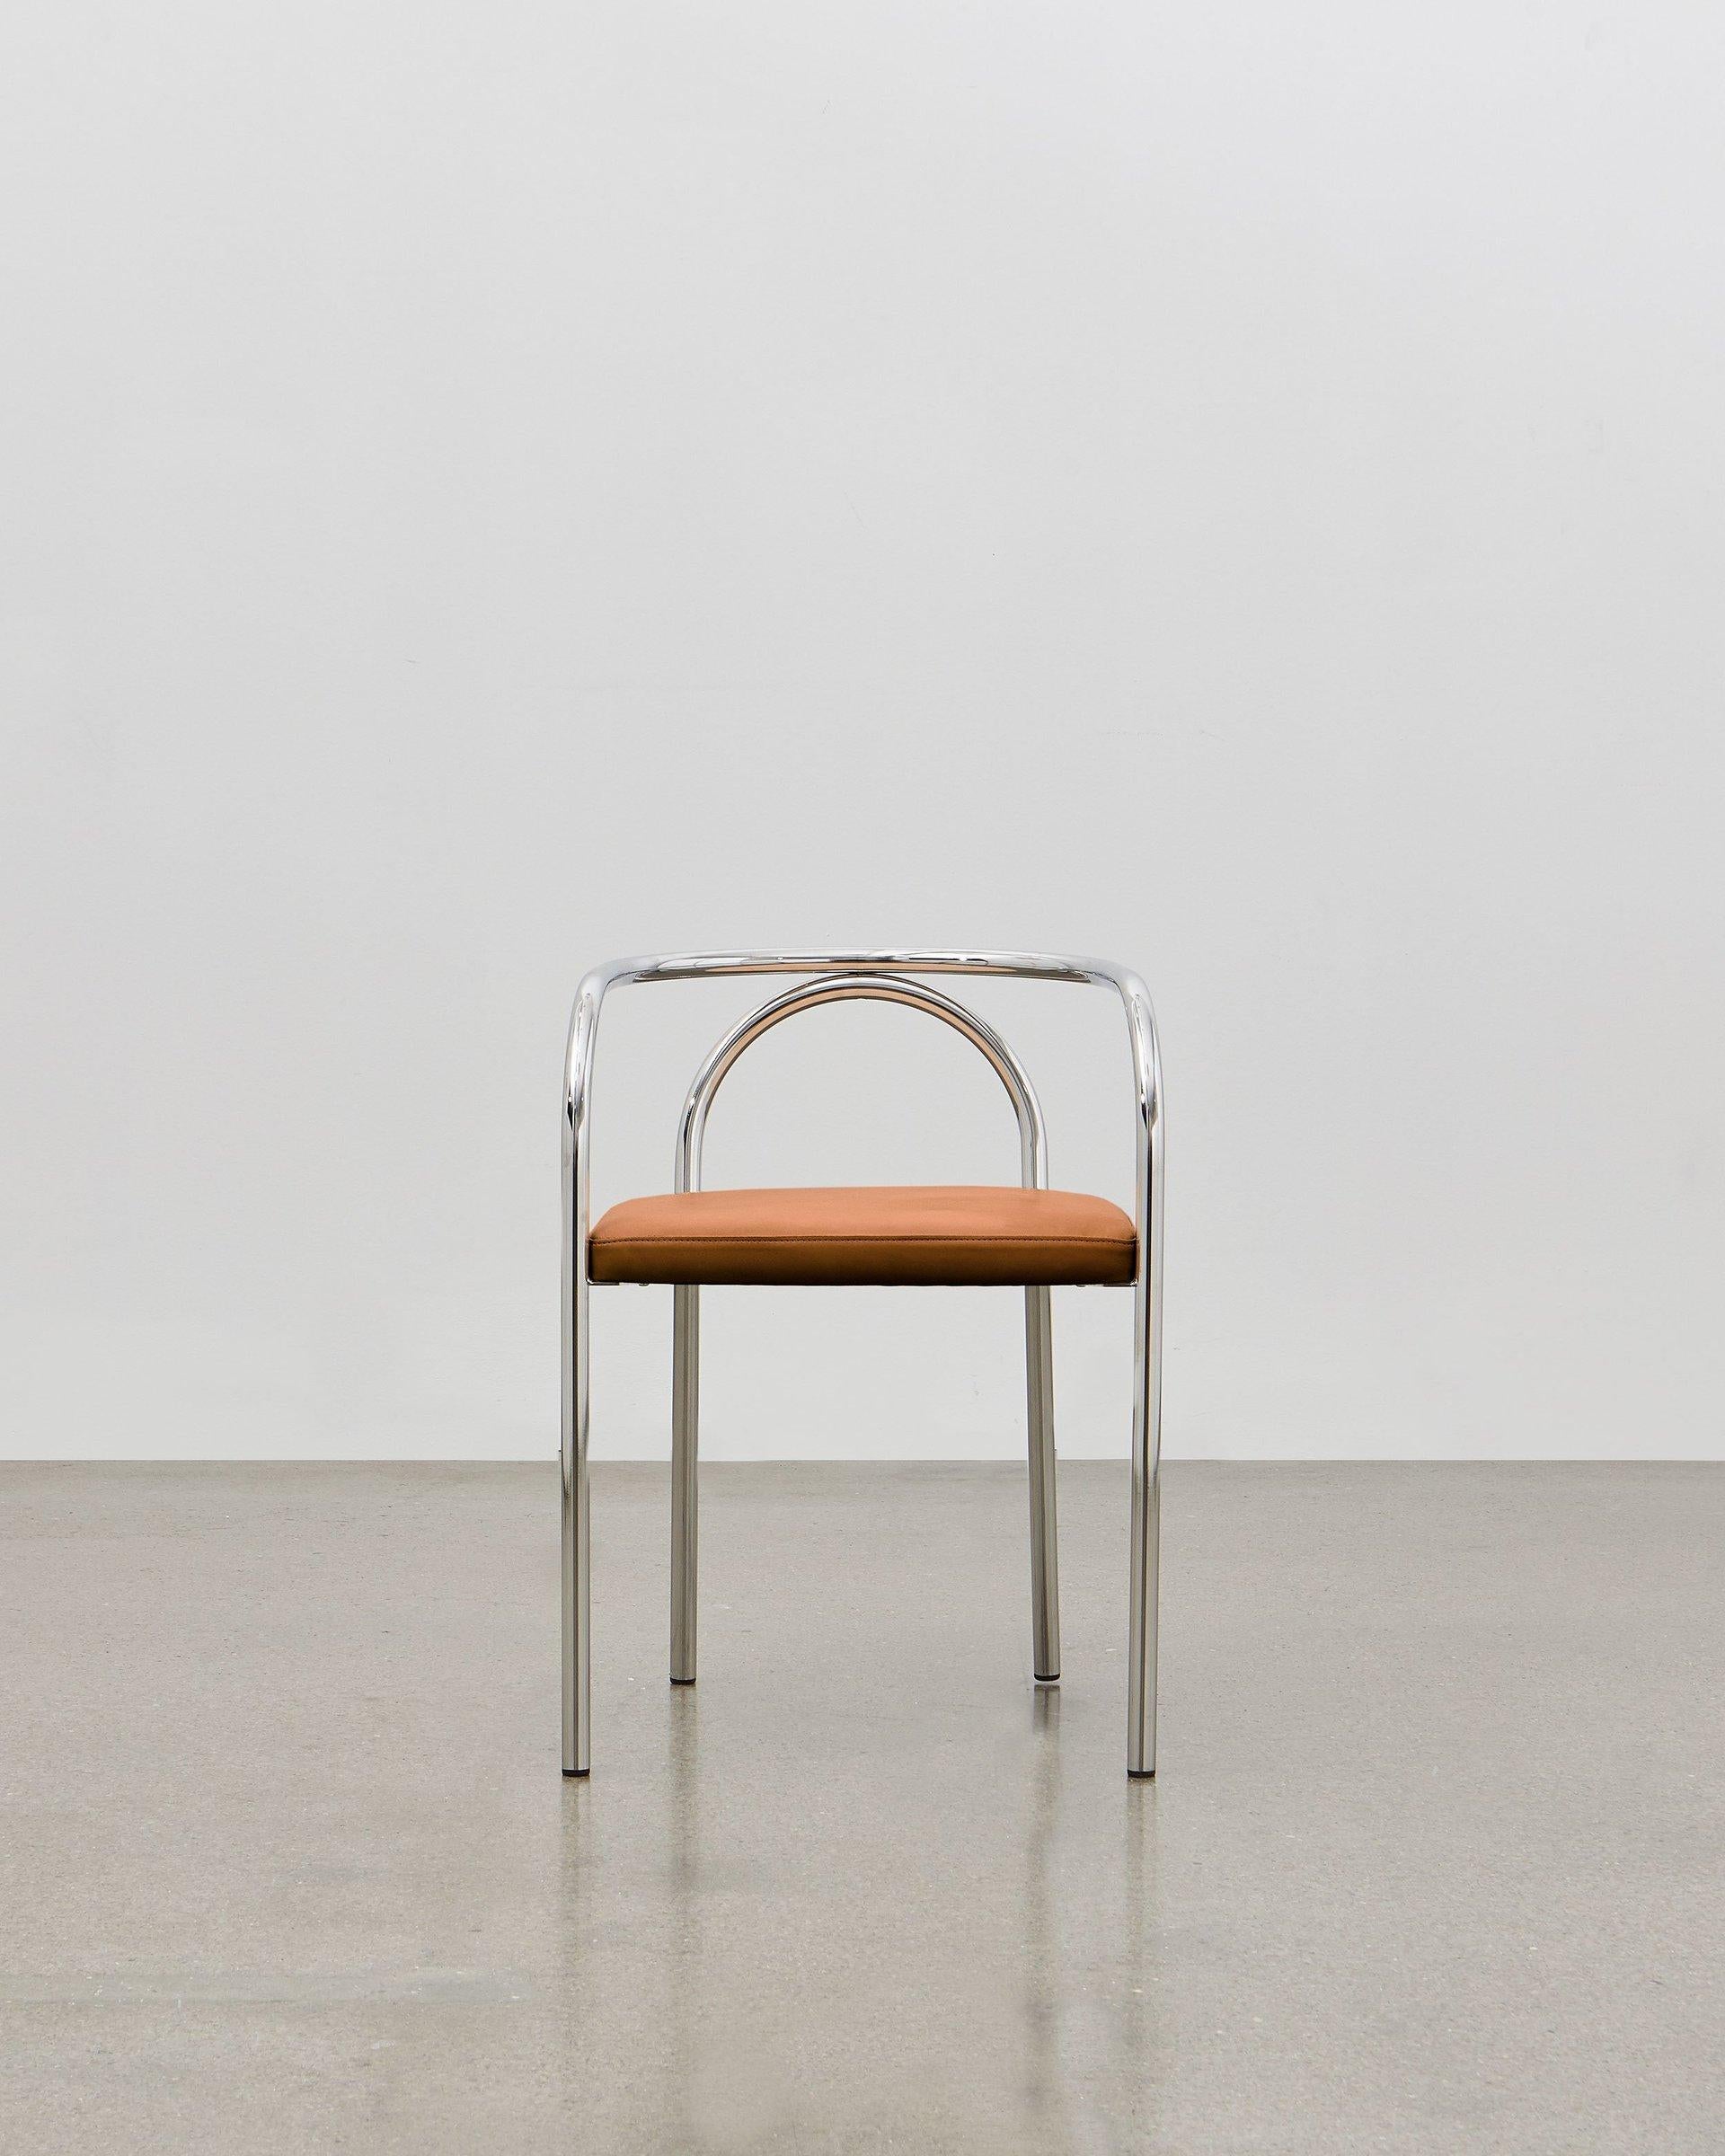 En créant la PH Chair, Poul Henningsen a cherché à réinventer un certain nombre de meubles classiques traditionnellement construits en bois, comme la chaise 